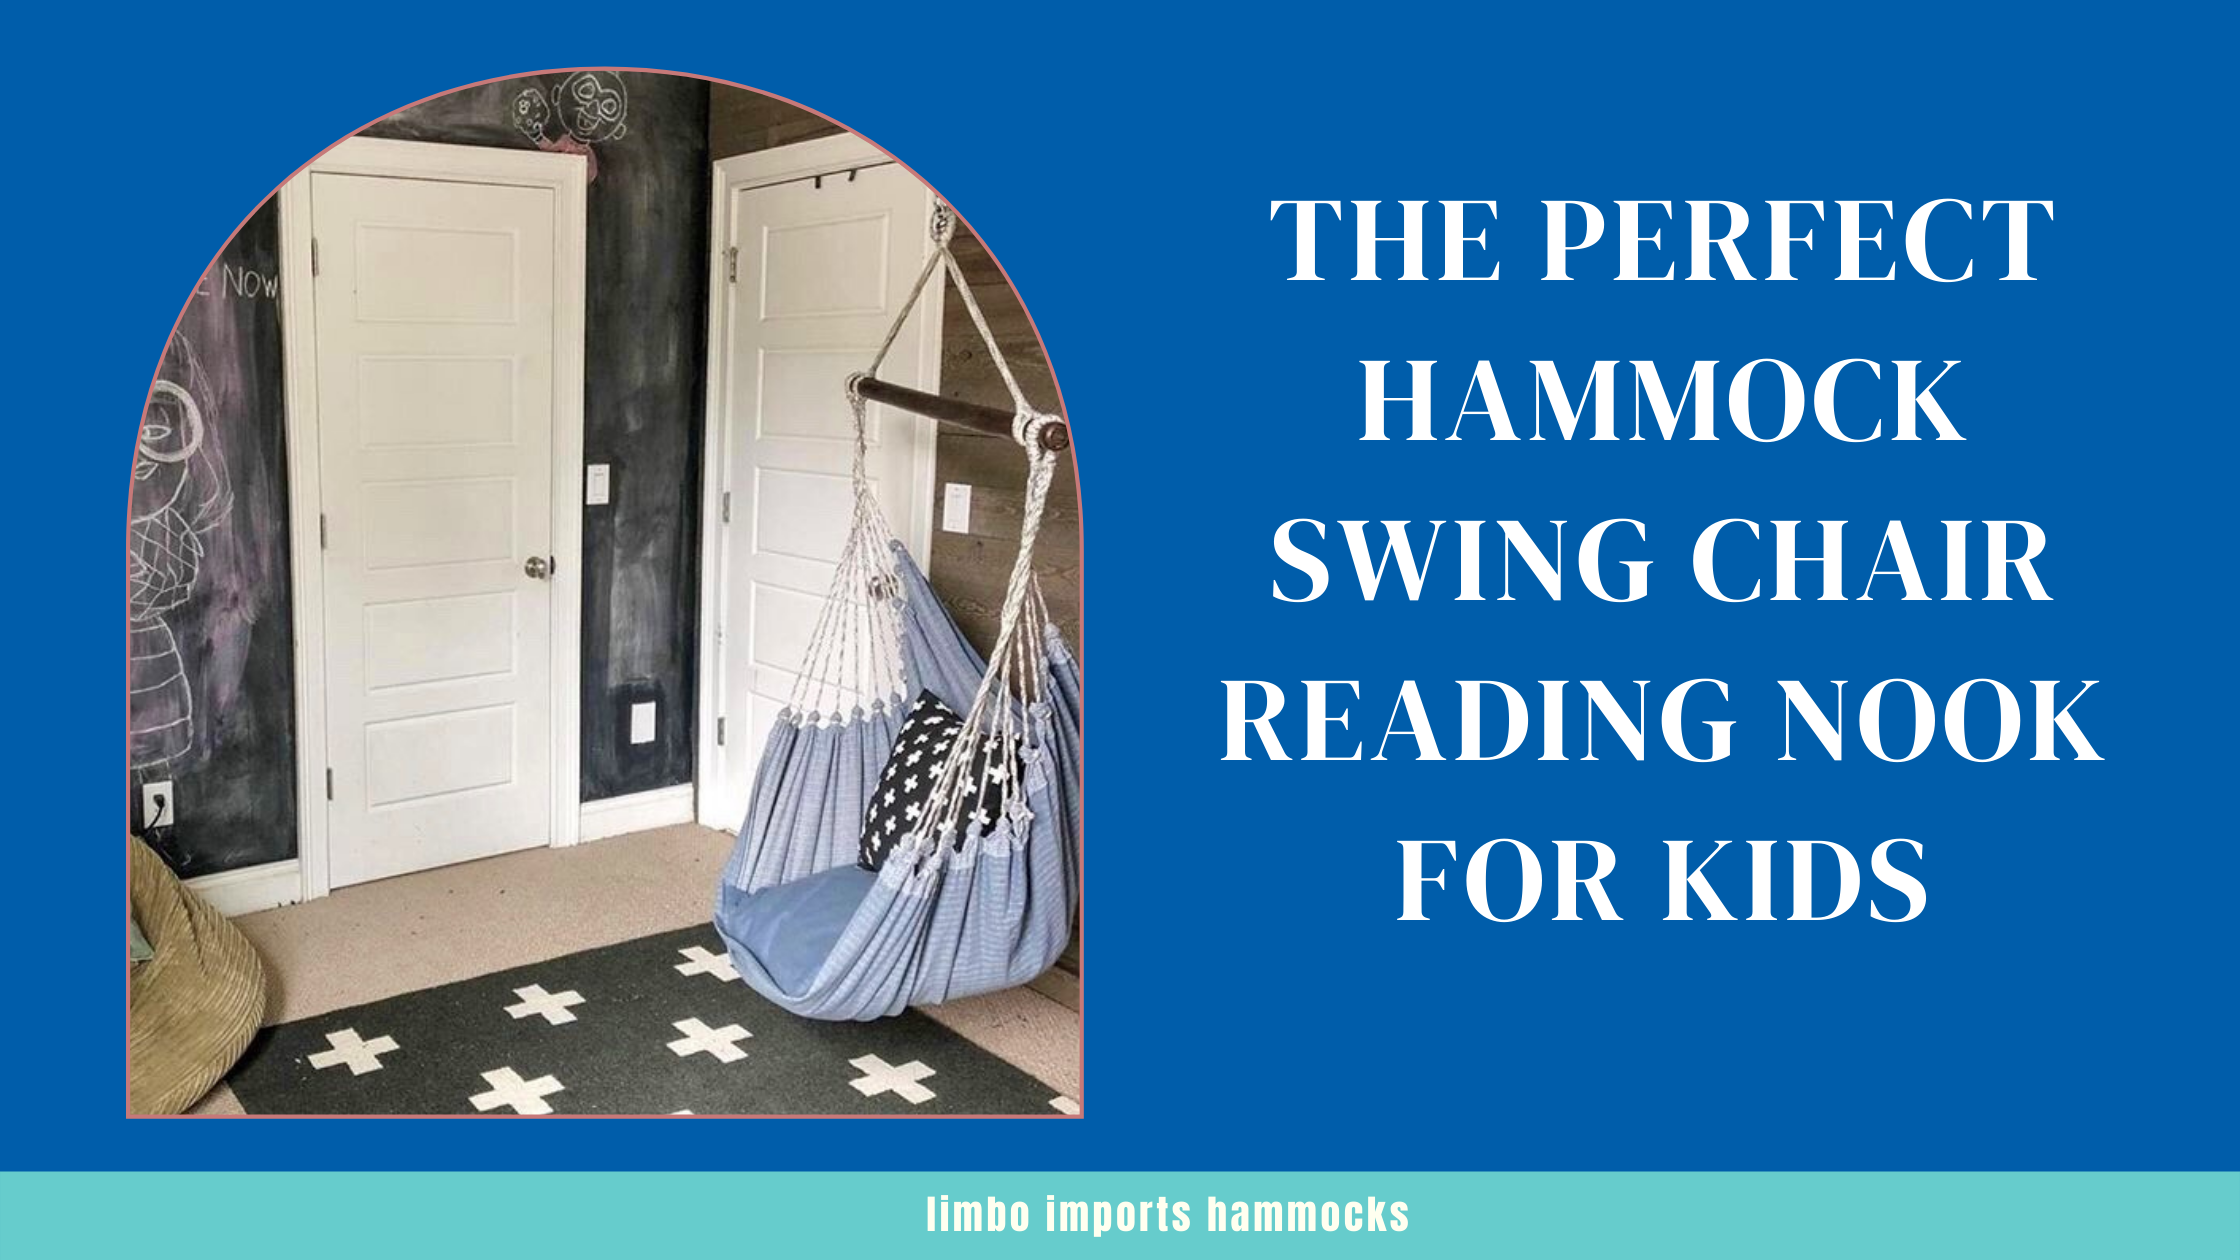 Hammock Swing Chair For Kids